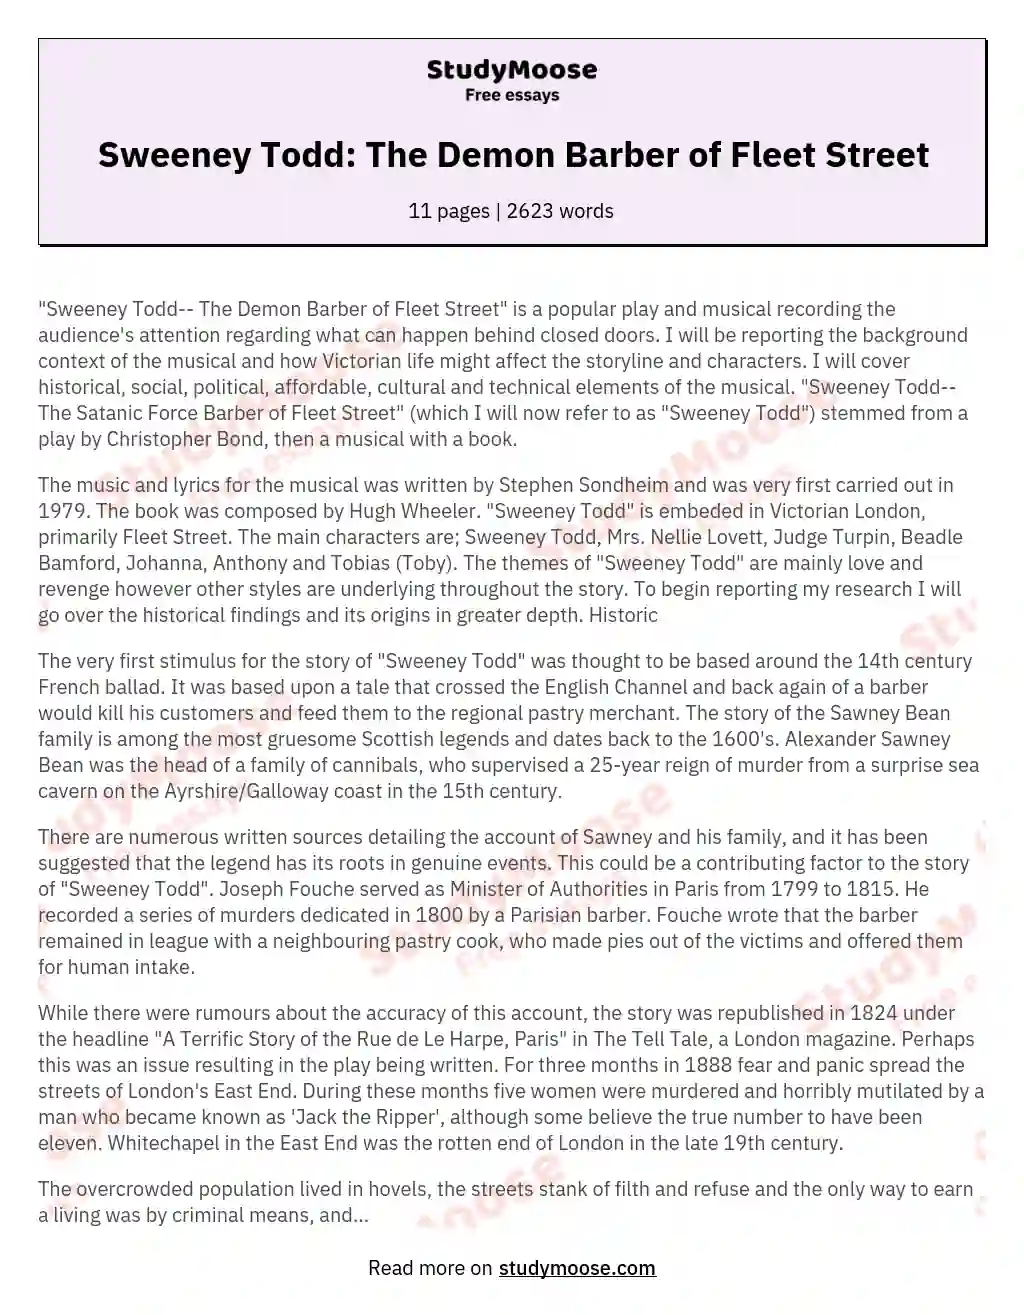 Sweeney Todd: The Demon Barber of Fleet Street essay